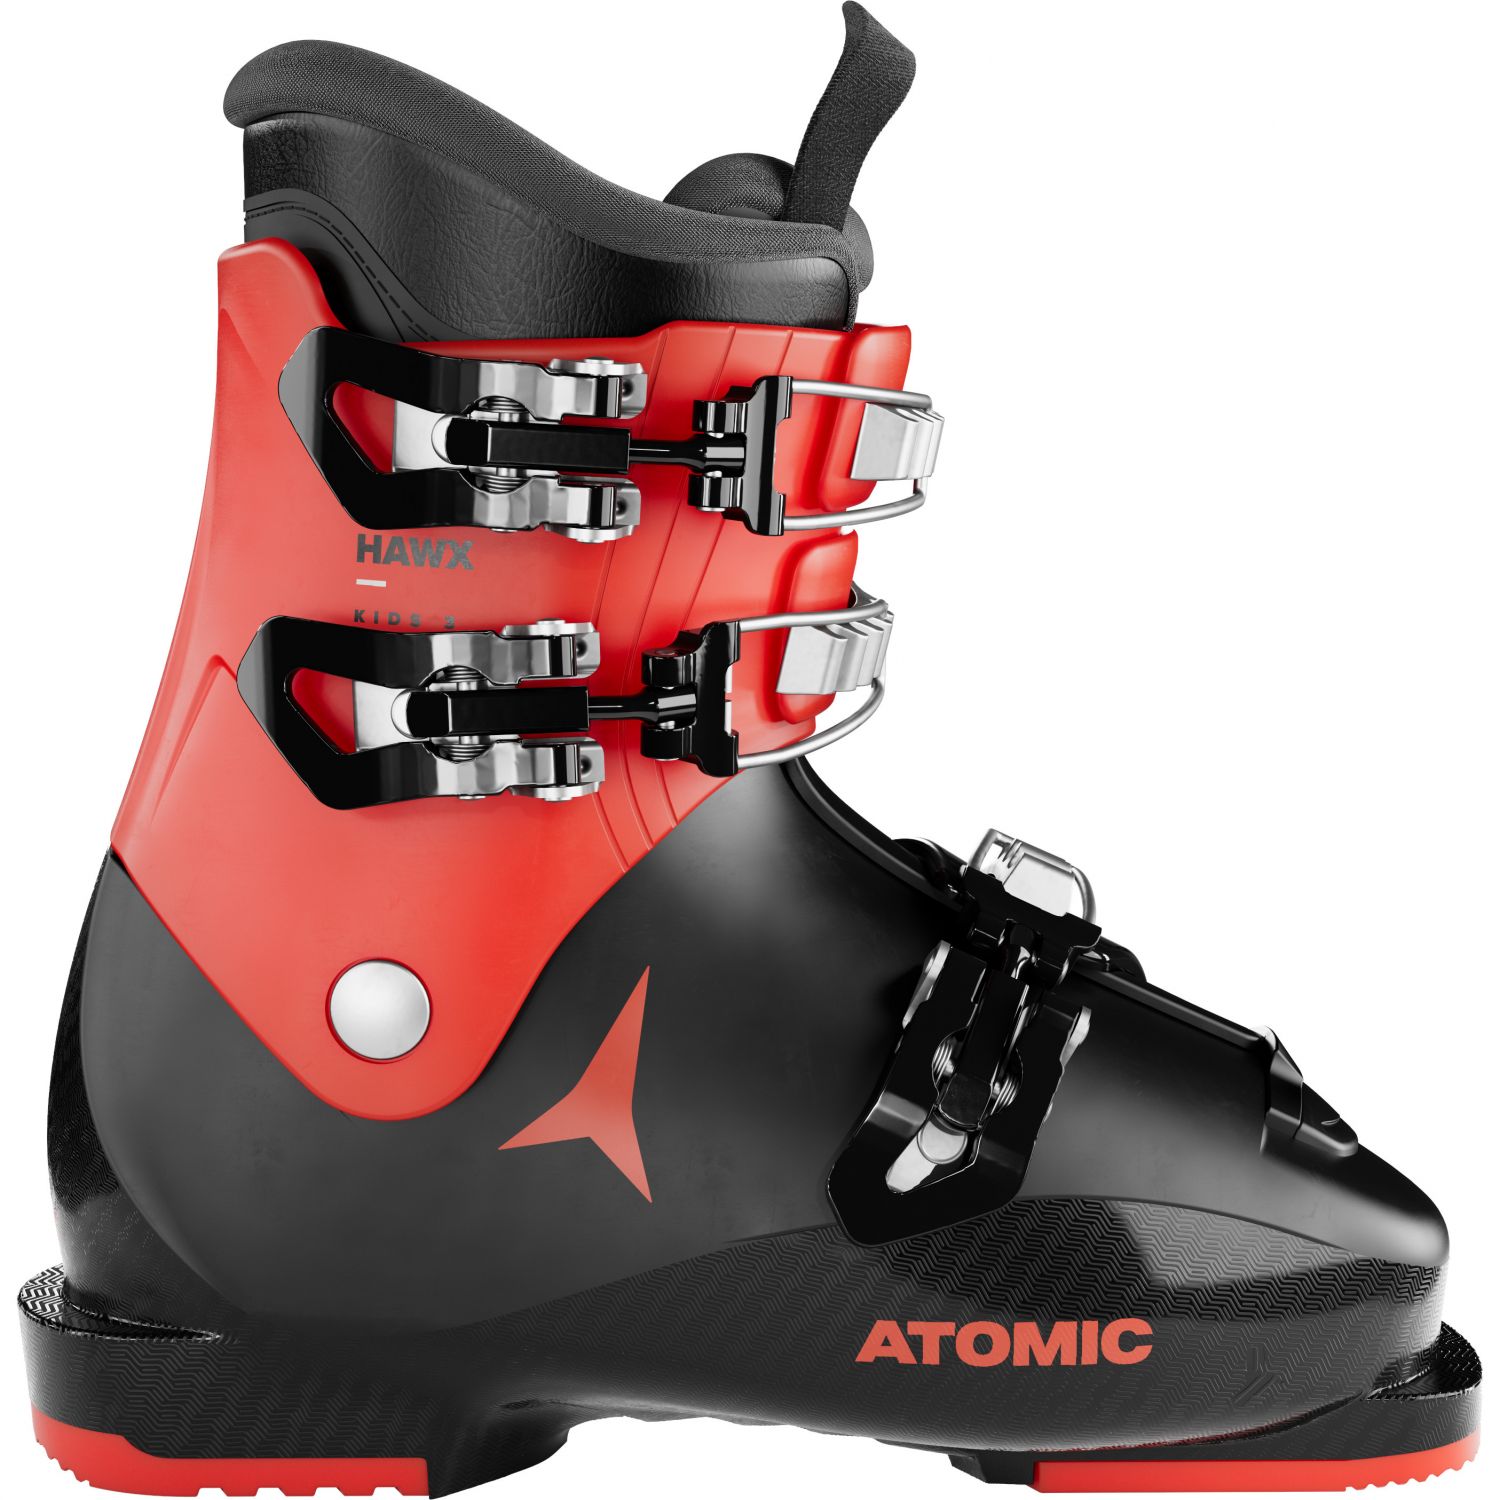 Atomic Hawx Kids 3, Skischuhe, Junior, schwarz/rot